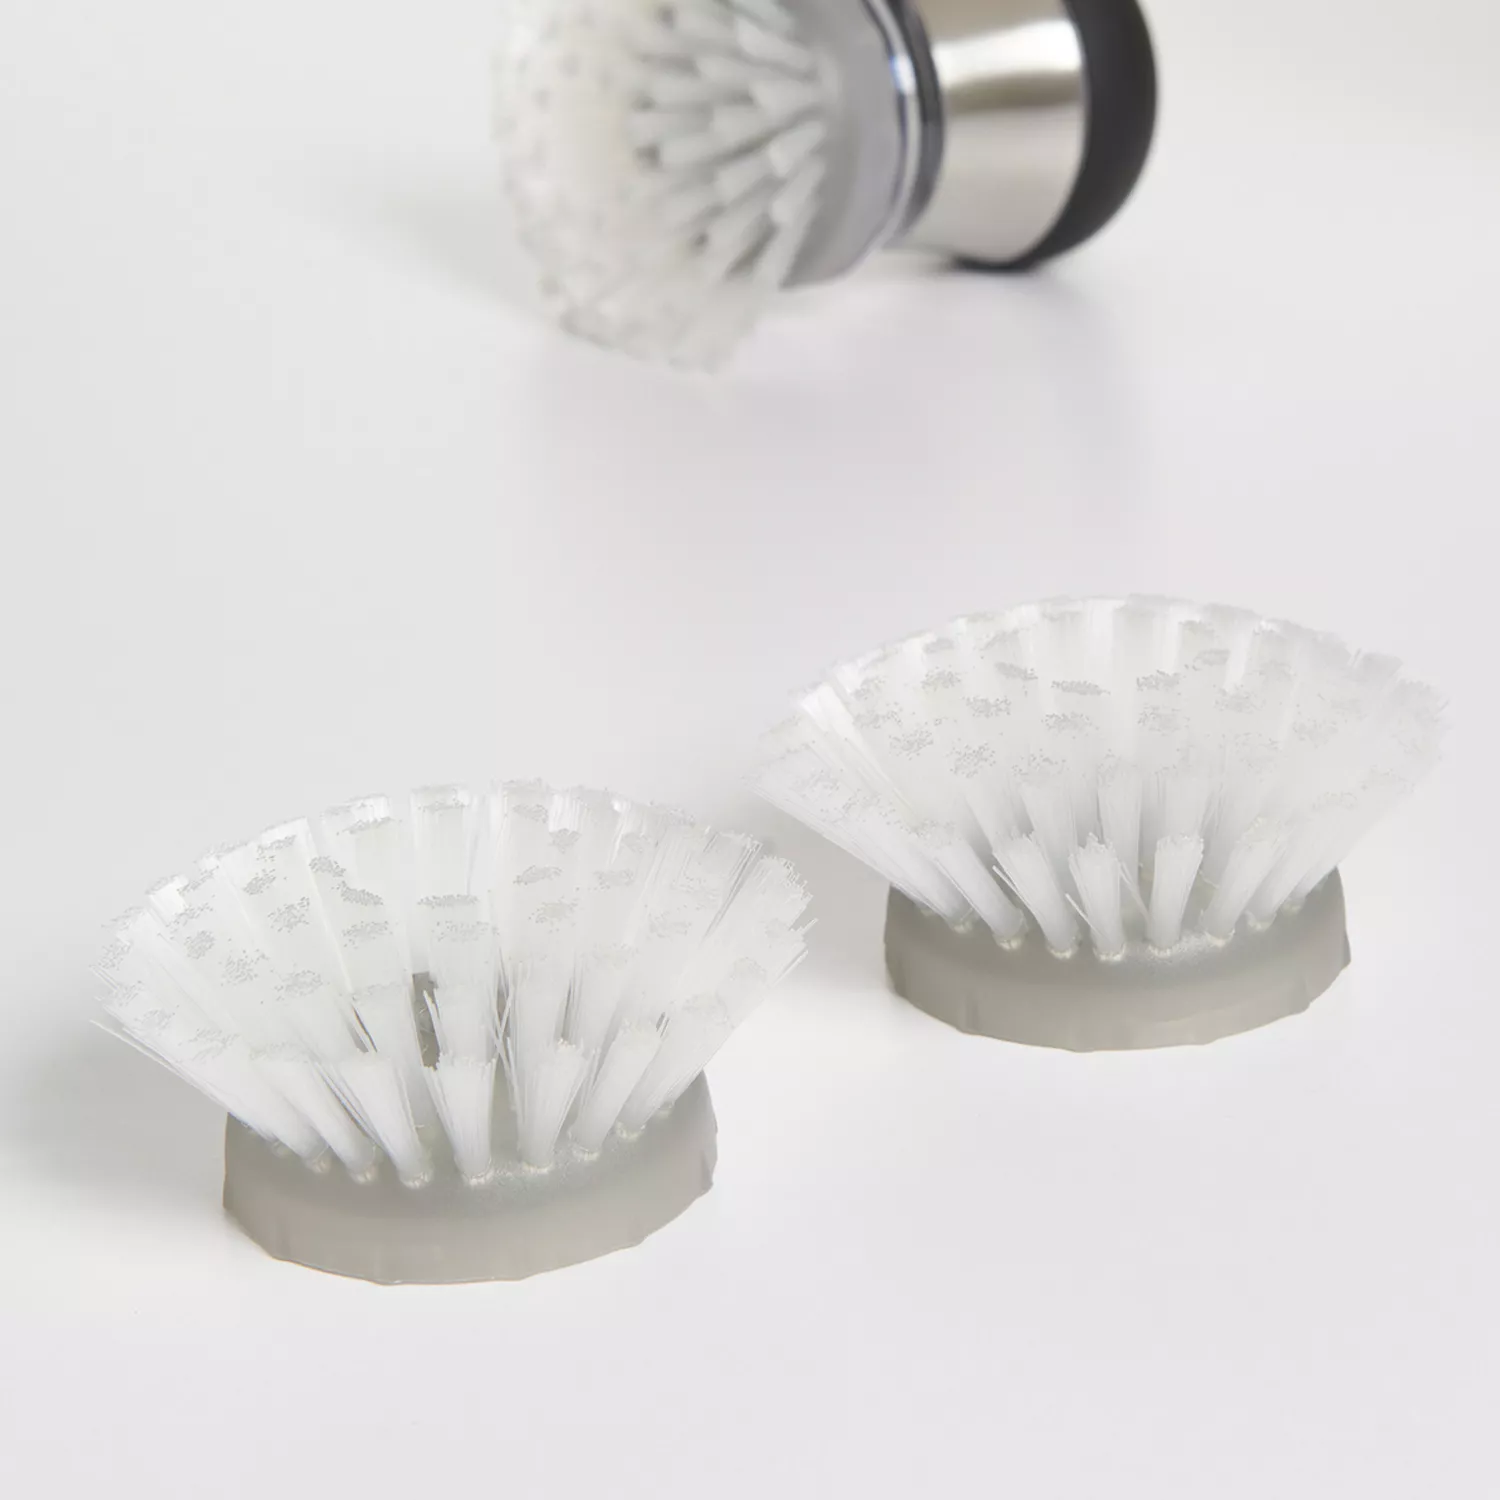 OXO Good Grips Soap Dispensing Dish Brush Refills, 2 Pack, White, Nylon  Bristles